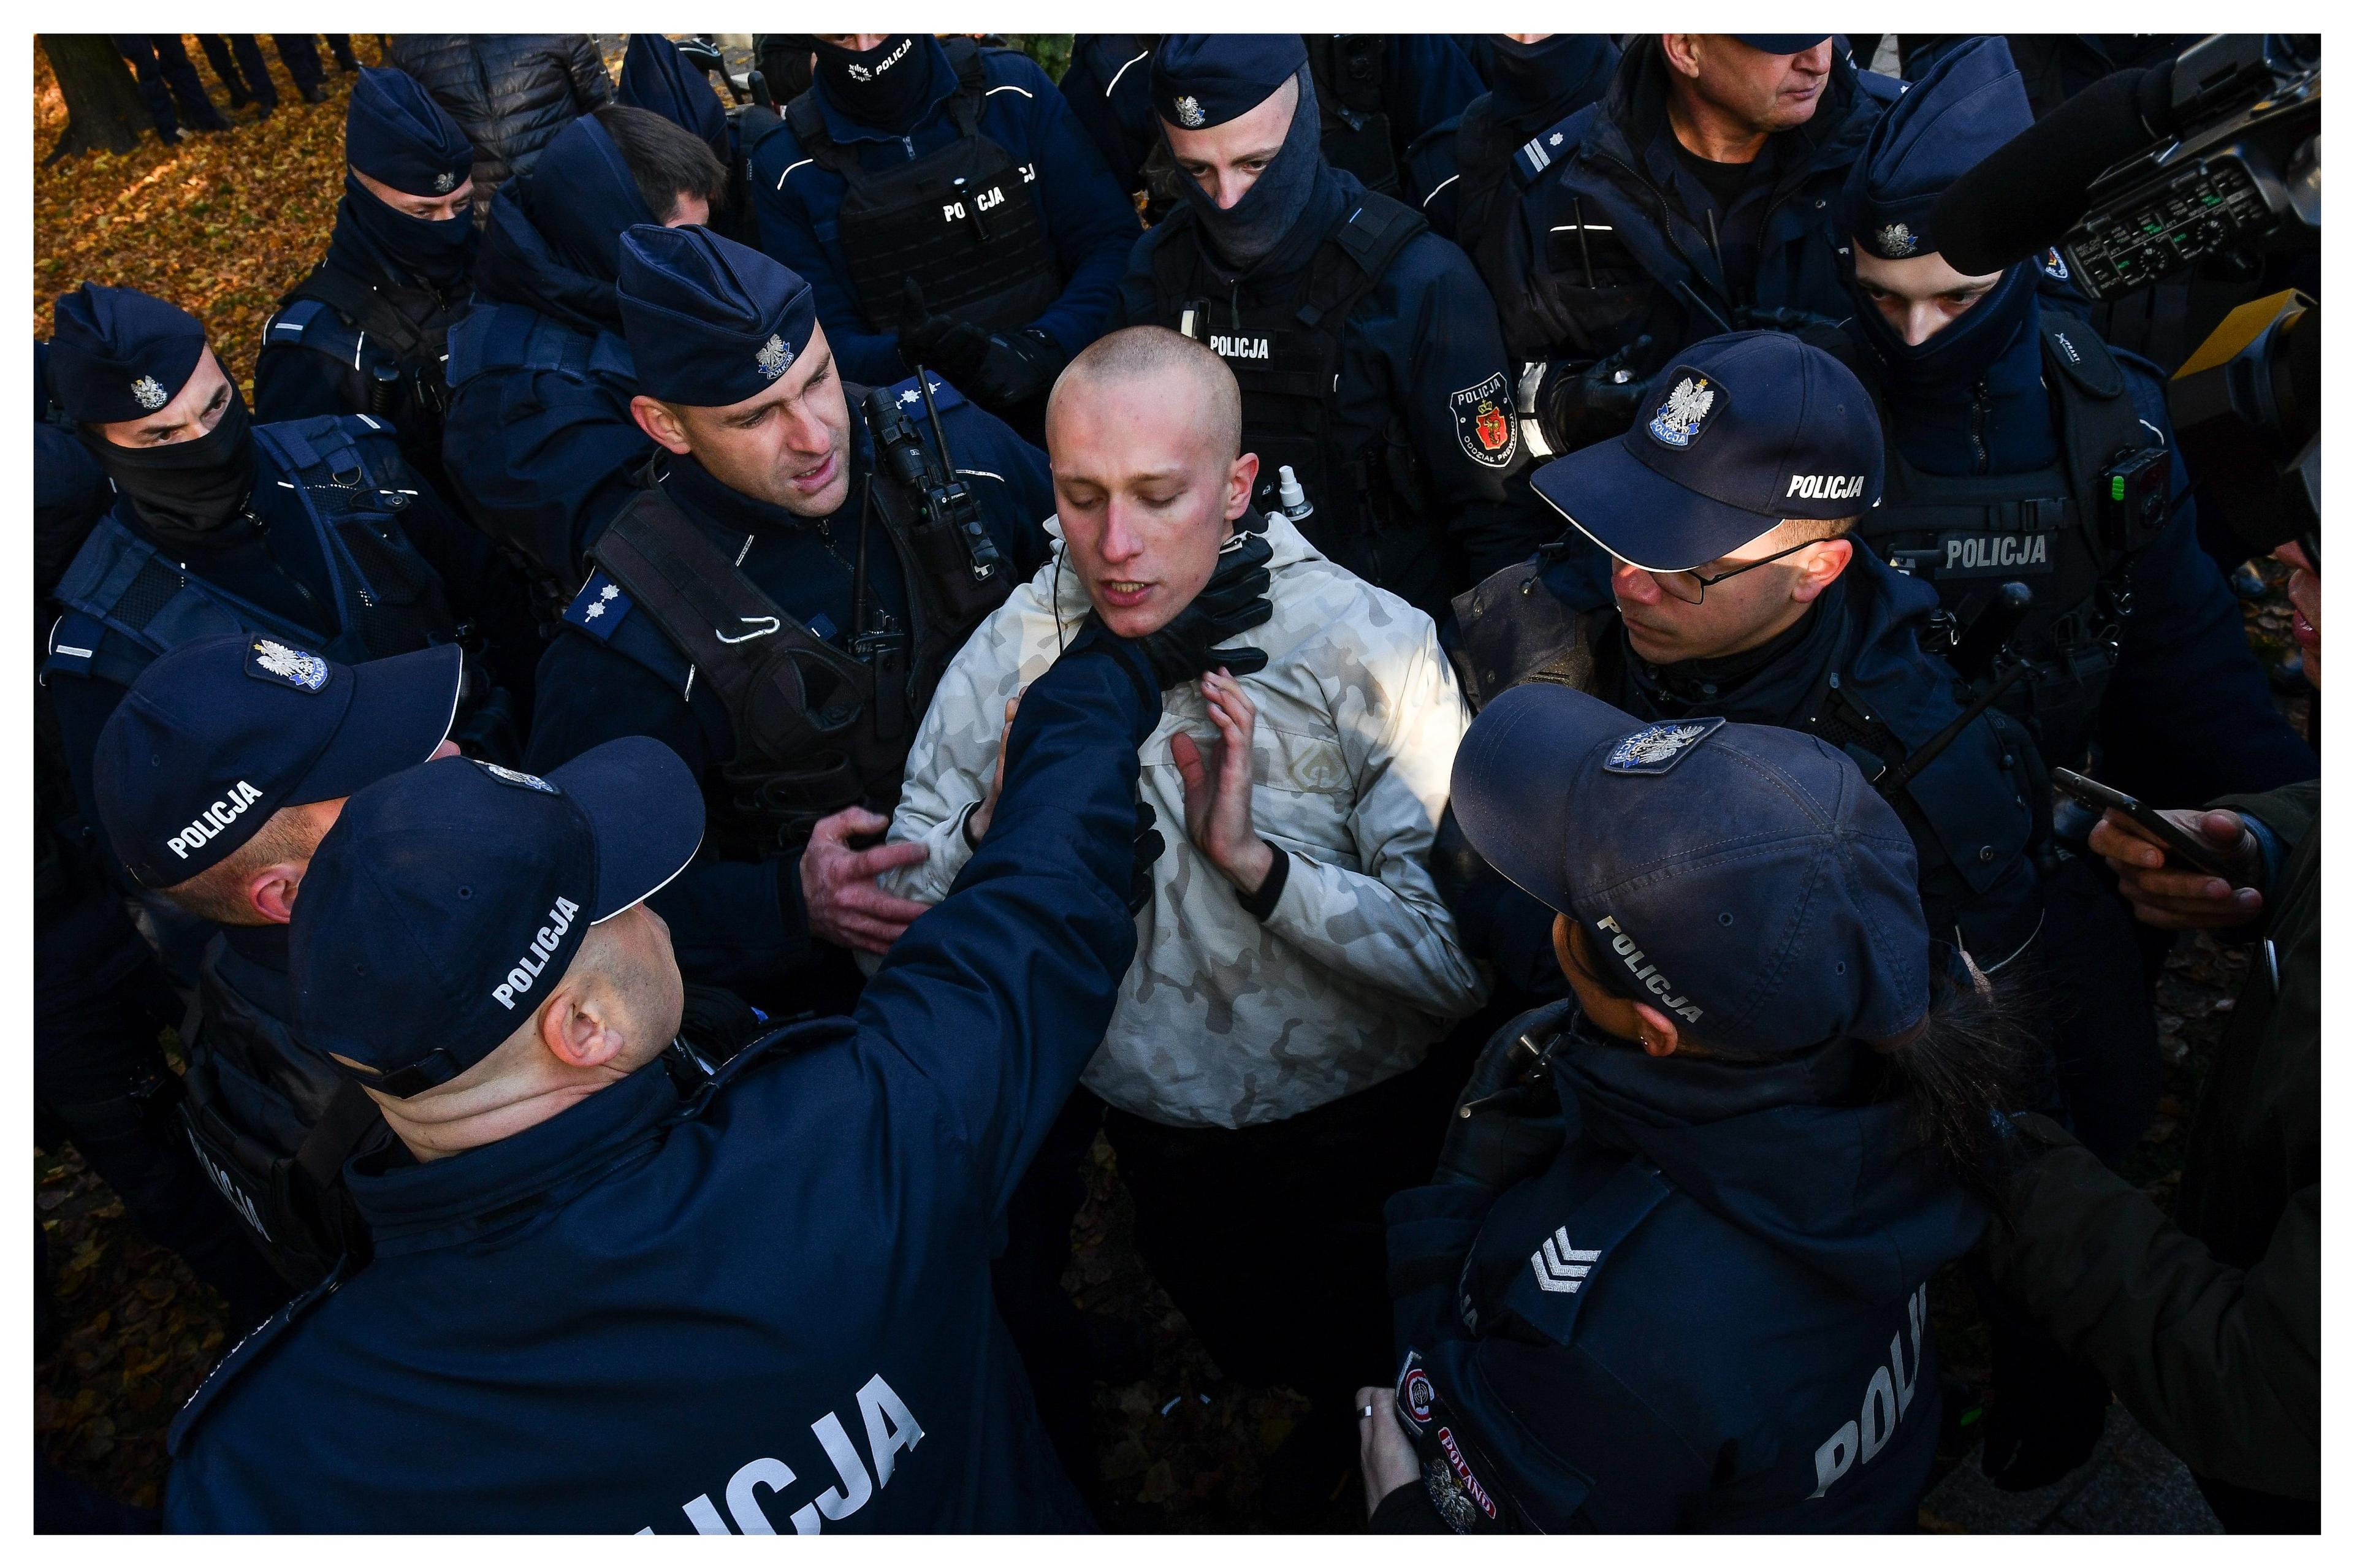 Policjant chwyta za gardło protestującego, otoczonego przez innych policjantów